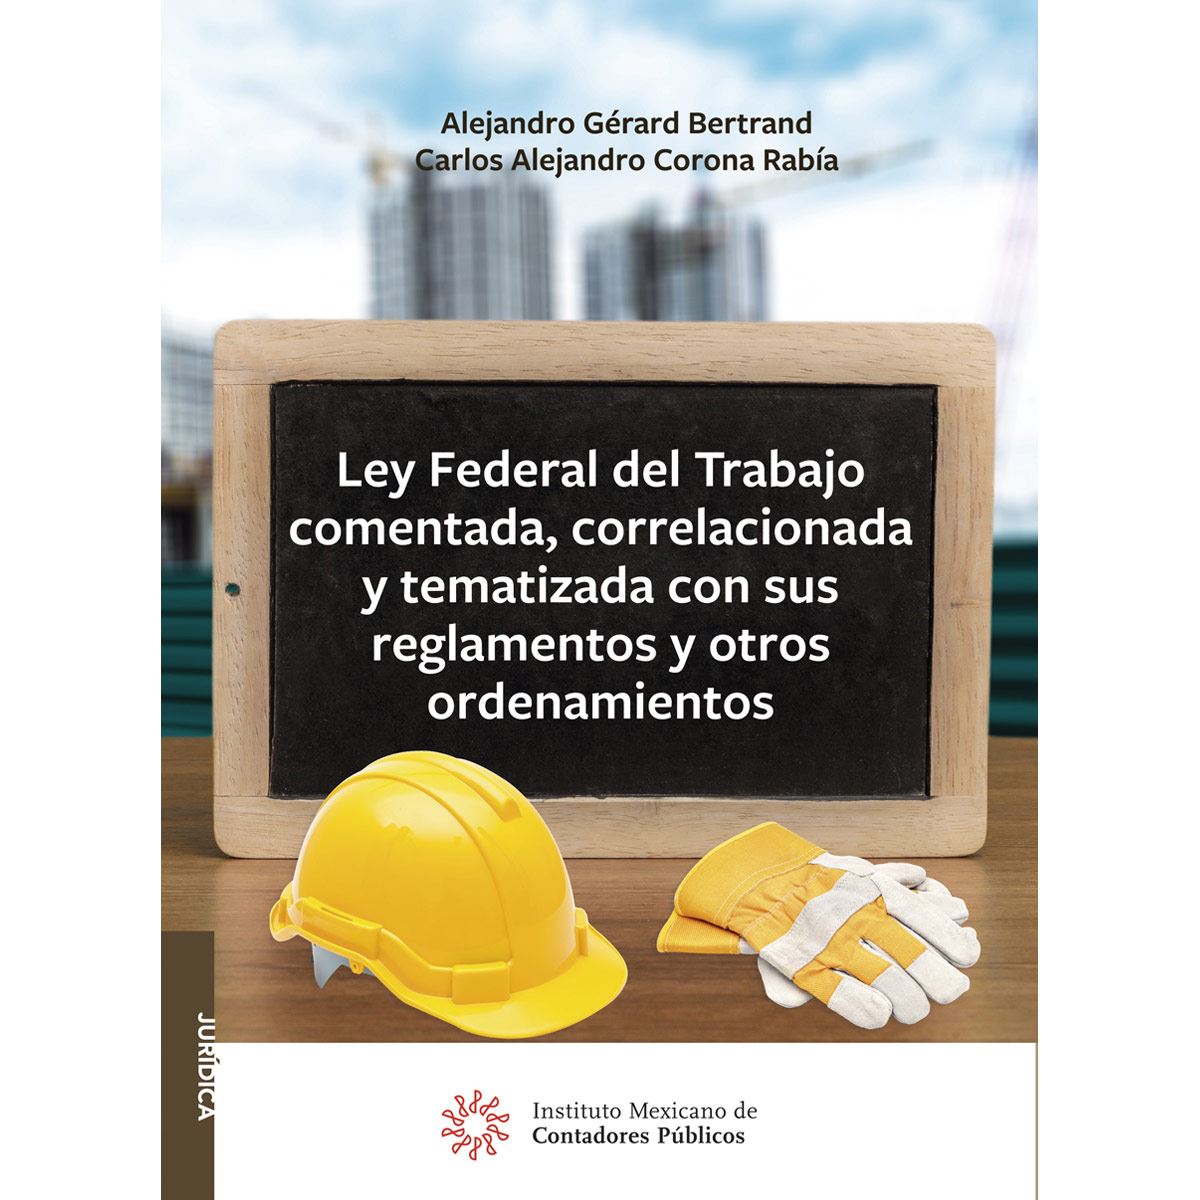 Ley Federal del Trabajo comentada, correlacionada y tematizada con sus